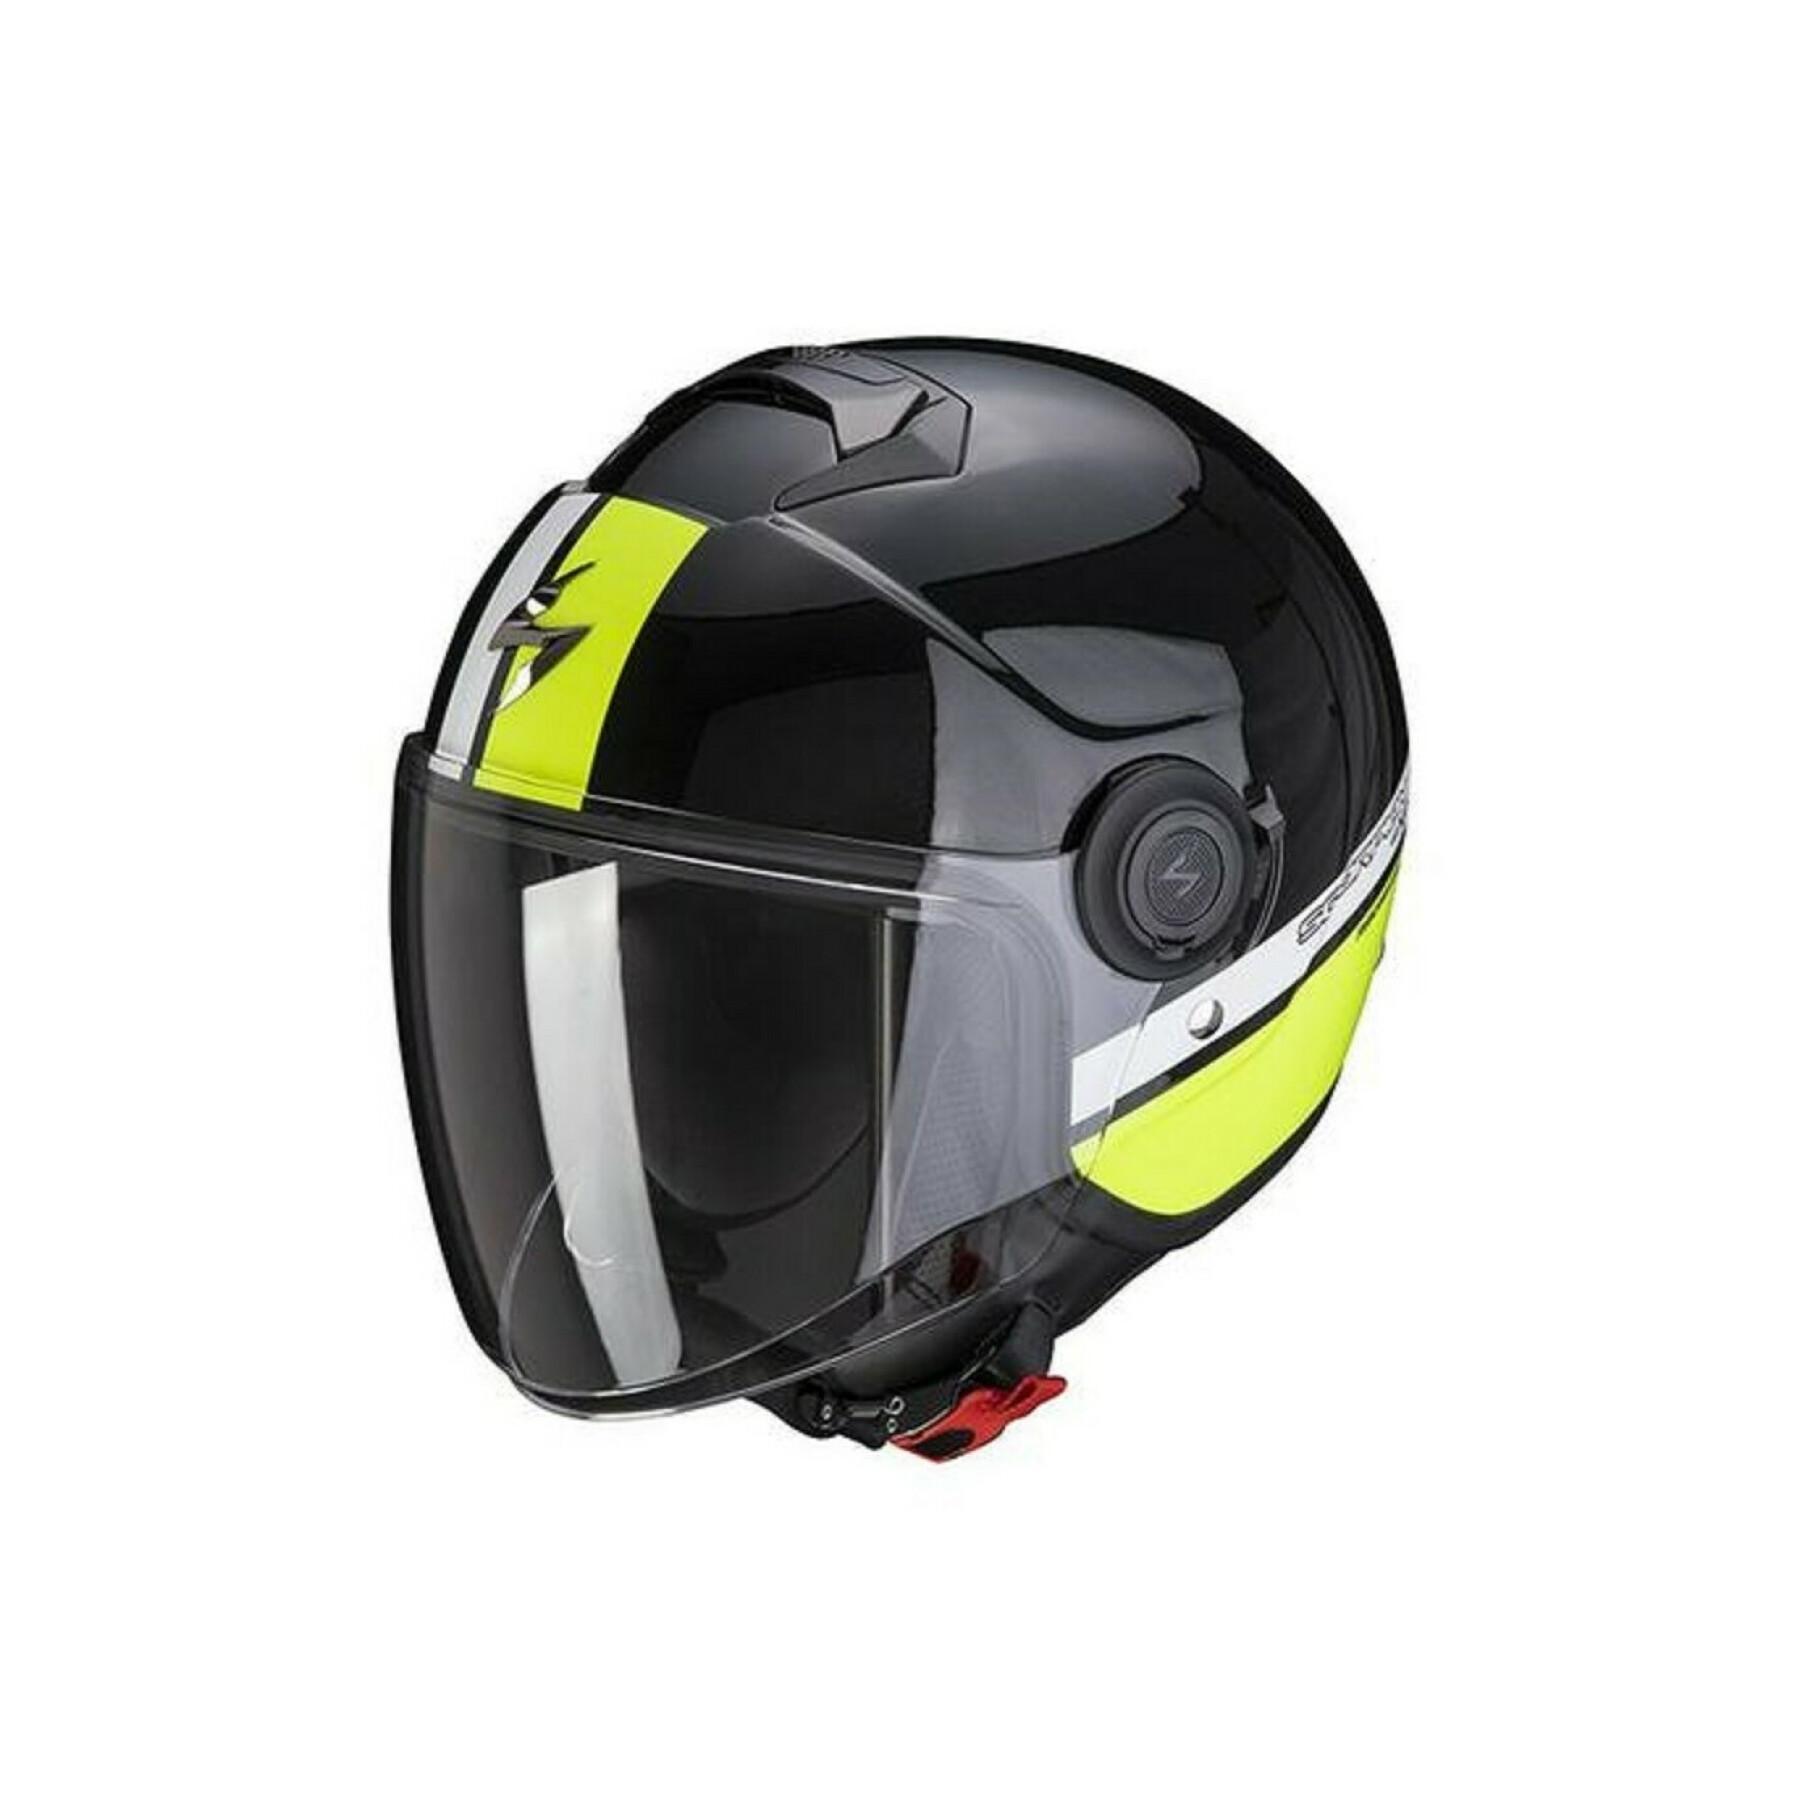 Jet helmet Scorpion Exo-City STRADA